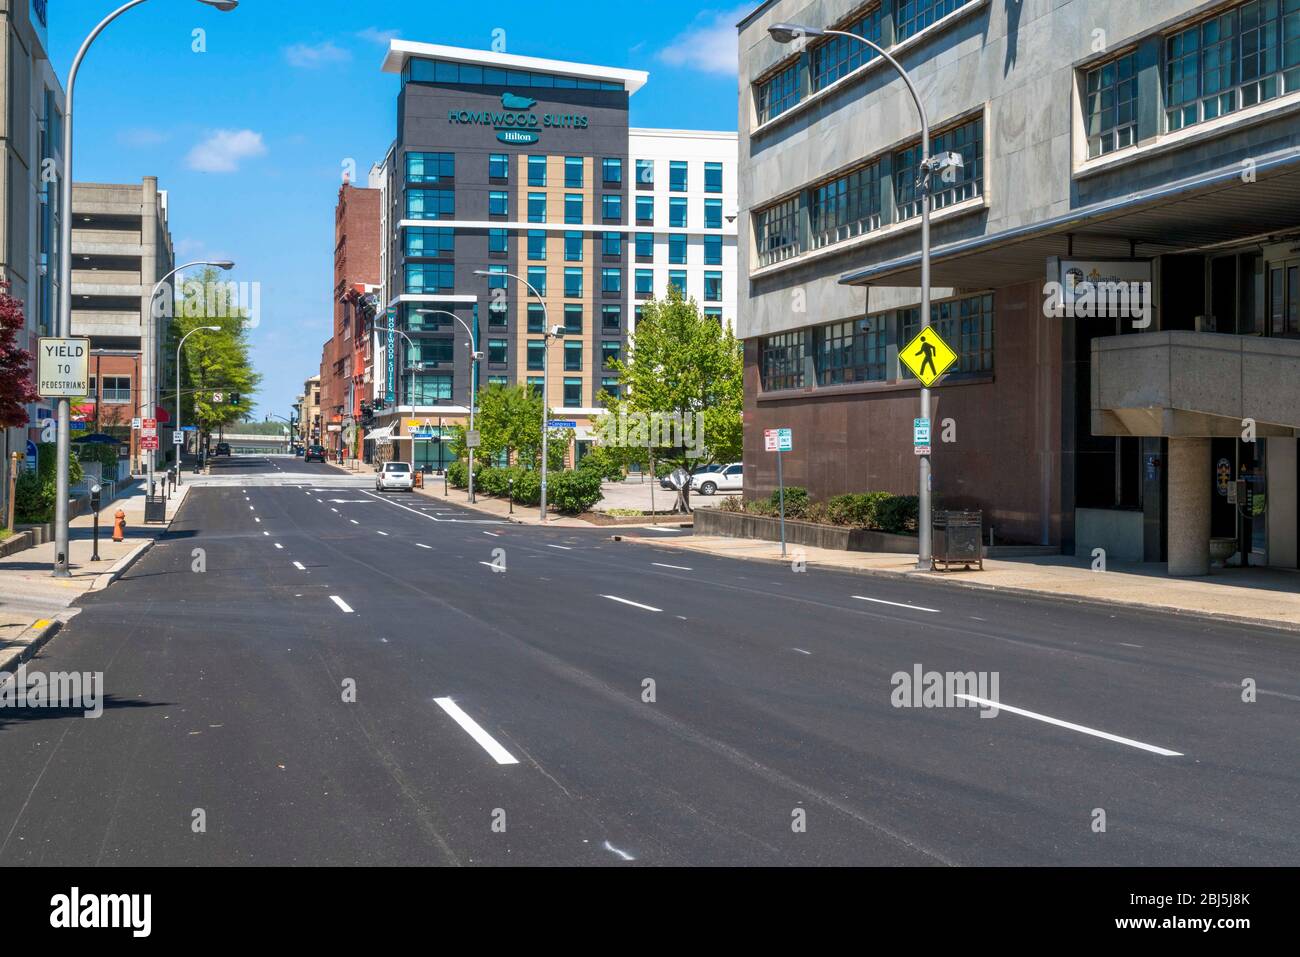 Vista de la calle durante el virus Novel COVID-19 y la orden de bloqueo del gobernador de Kentucky Andy Beshear vacía el centro de la ciudad fotografiado el 17 de abril de 2020 en Louisville, Kentucky. Foto de stock